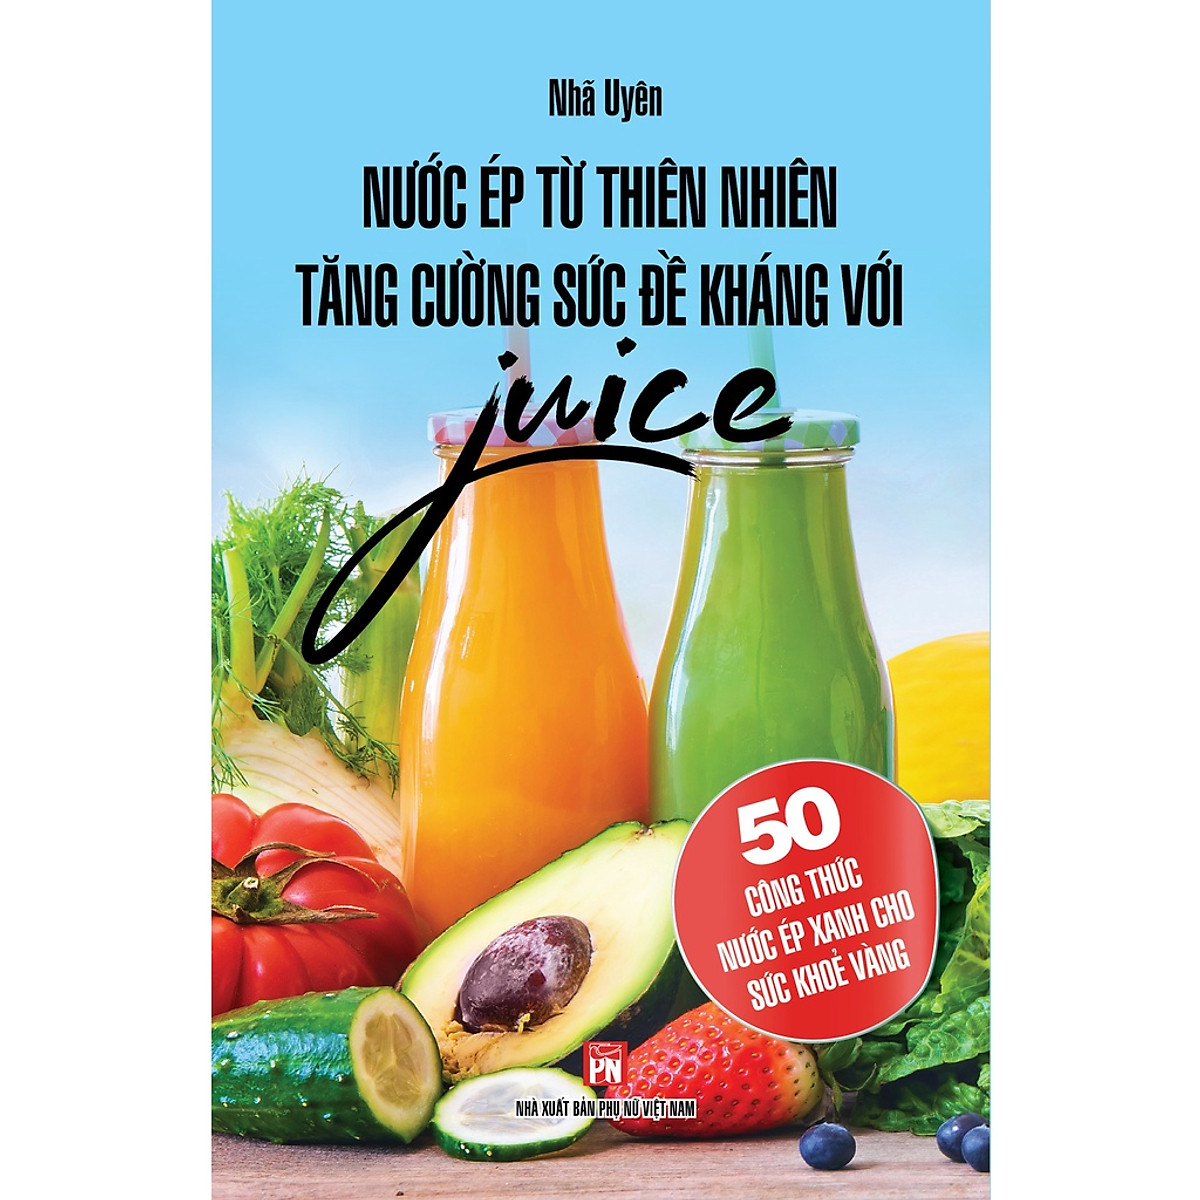 Sách - Nước Ép Từ Thiên Nhiên Tăng Cường Sức Đề Kháng Với Juice - 50 Công Thức Nước Ép Xanh Cho Sức Khỏe Vàng ( bc)